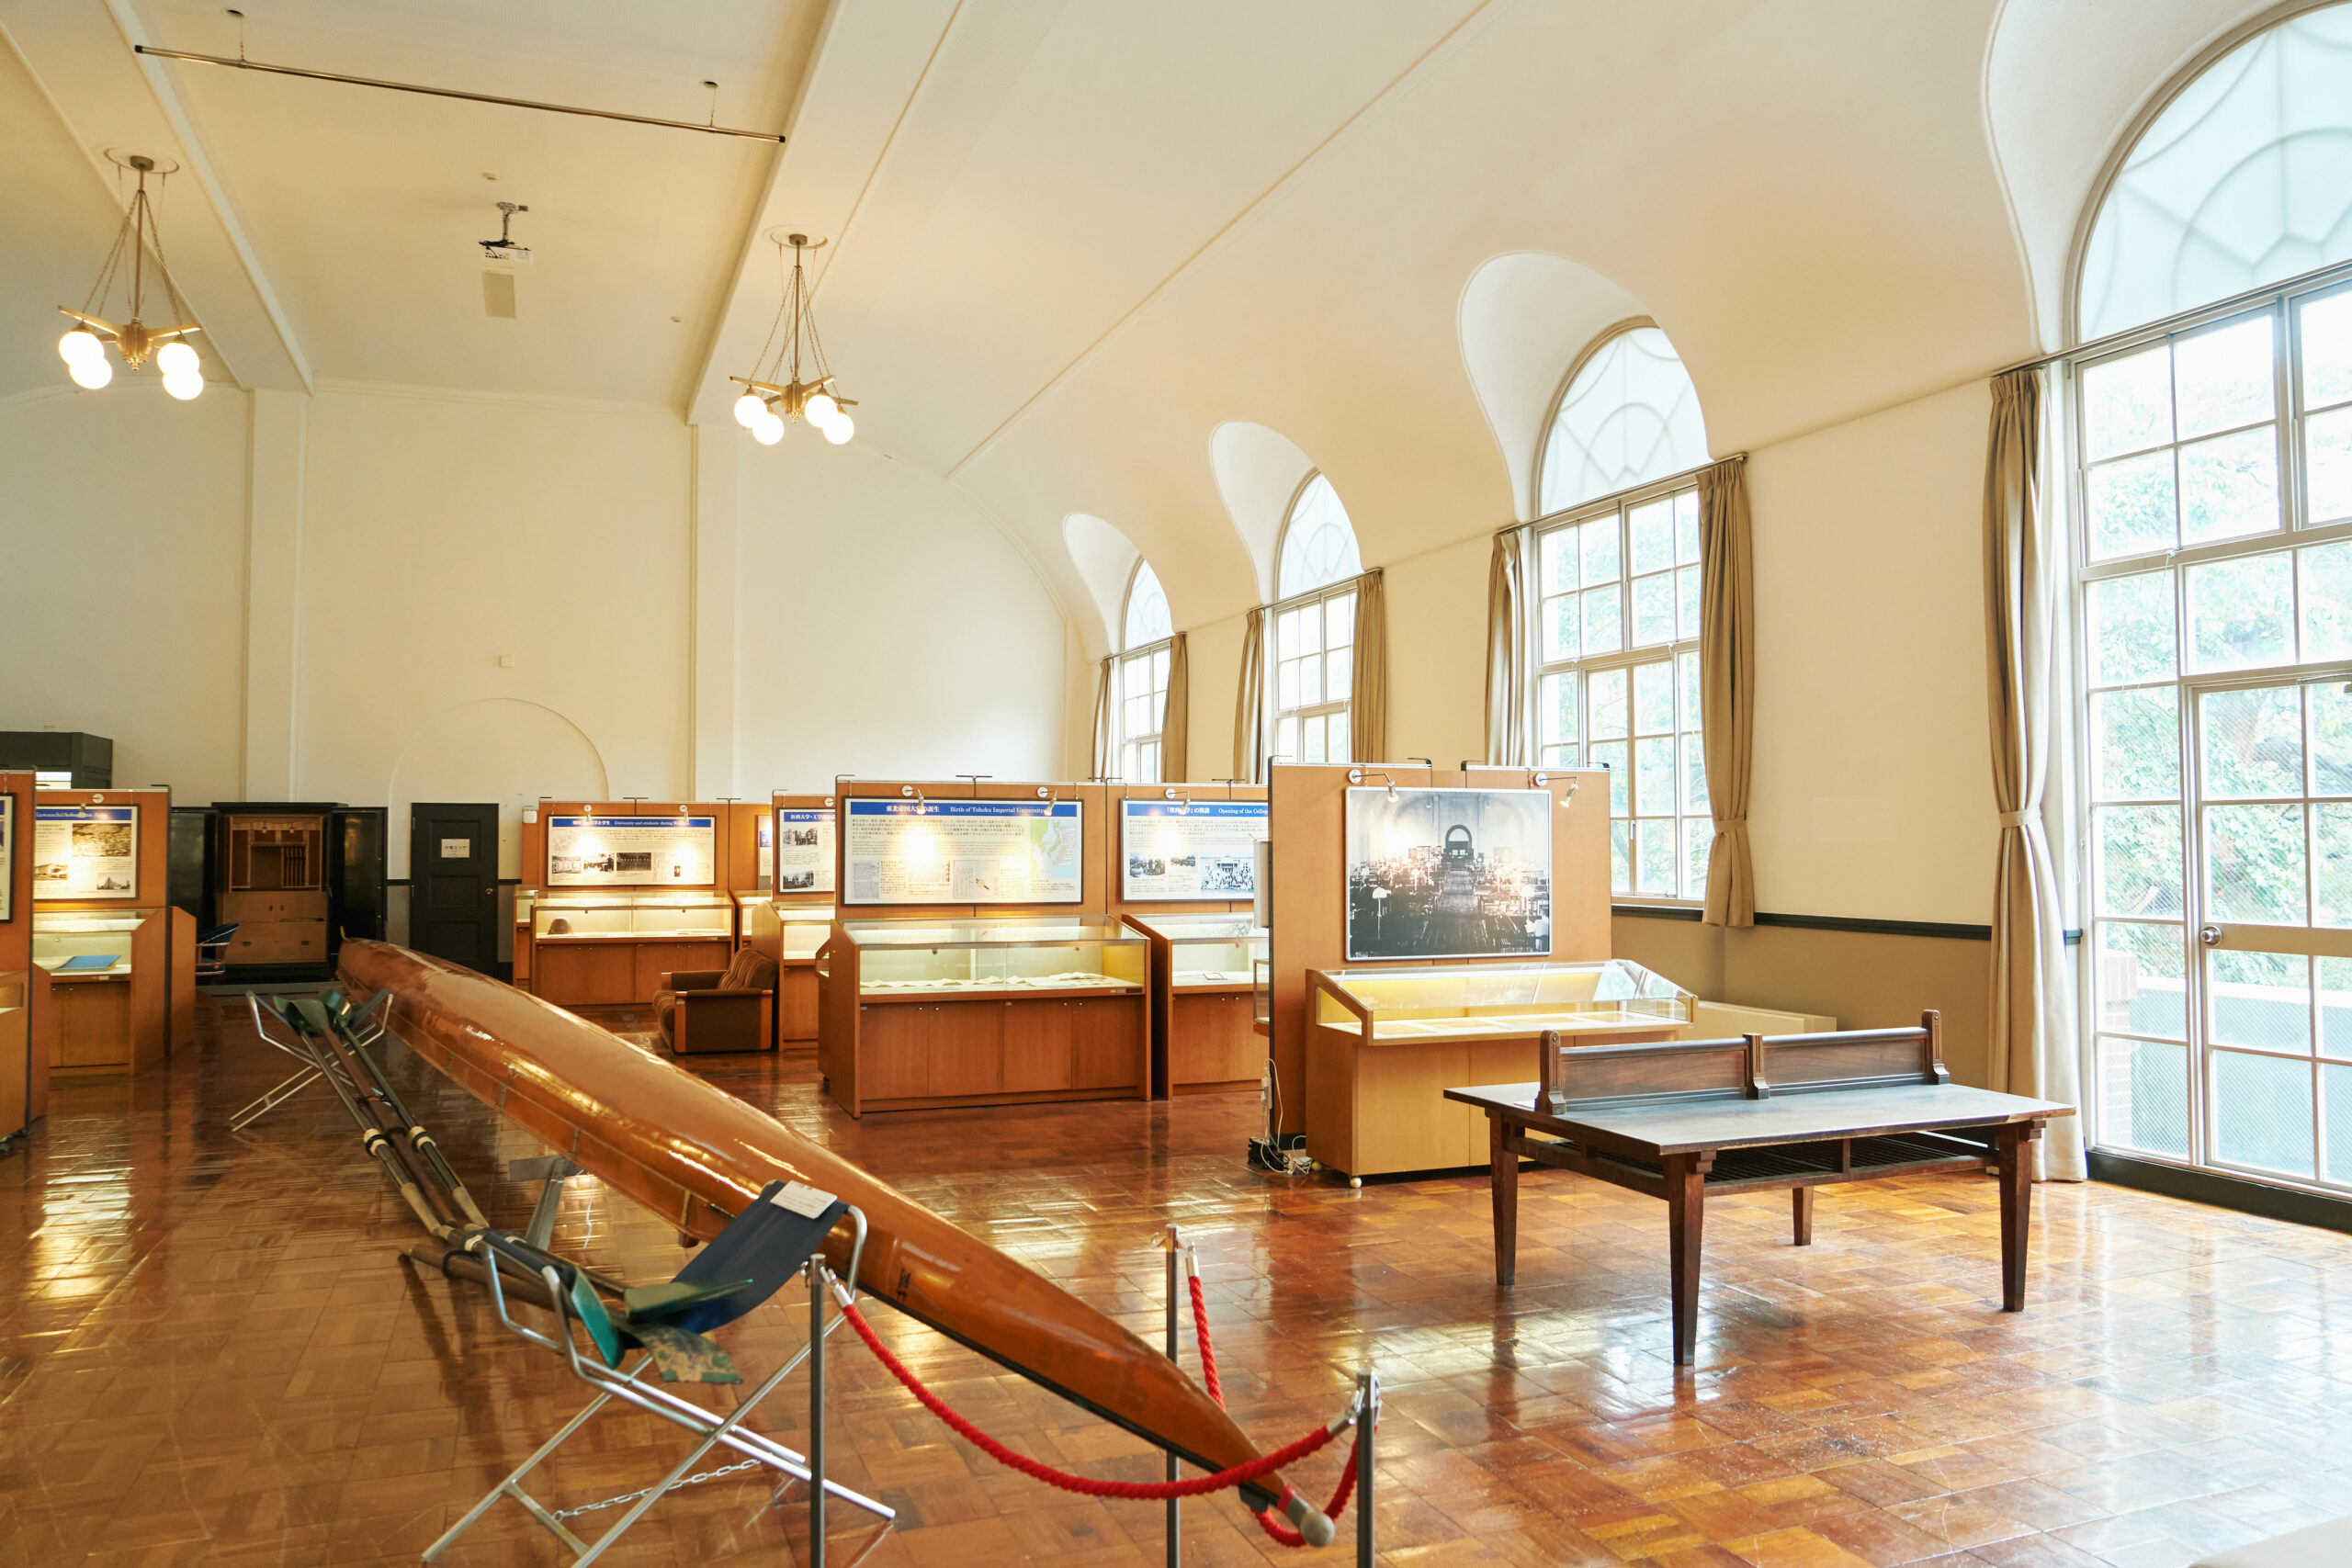 2階の展示室は天井が高く、柱や仕切り壁もないため広々としている。東北大学の歴史資料のほか、東北大学の前身である仙台医学専門学校に留学していた作家・魯迅にまつわる資料も展示されている。